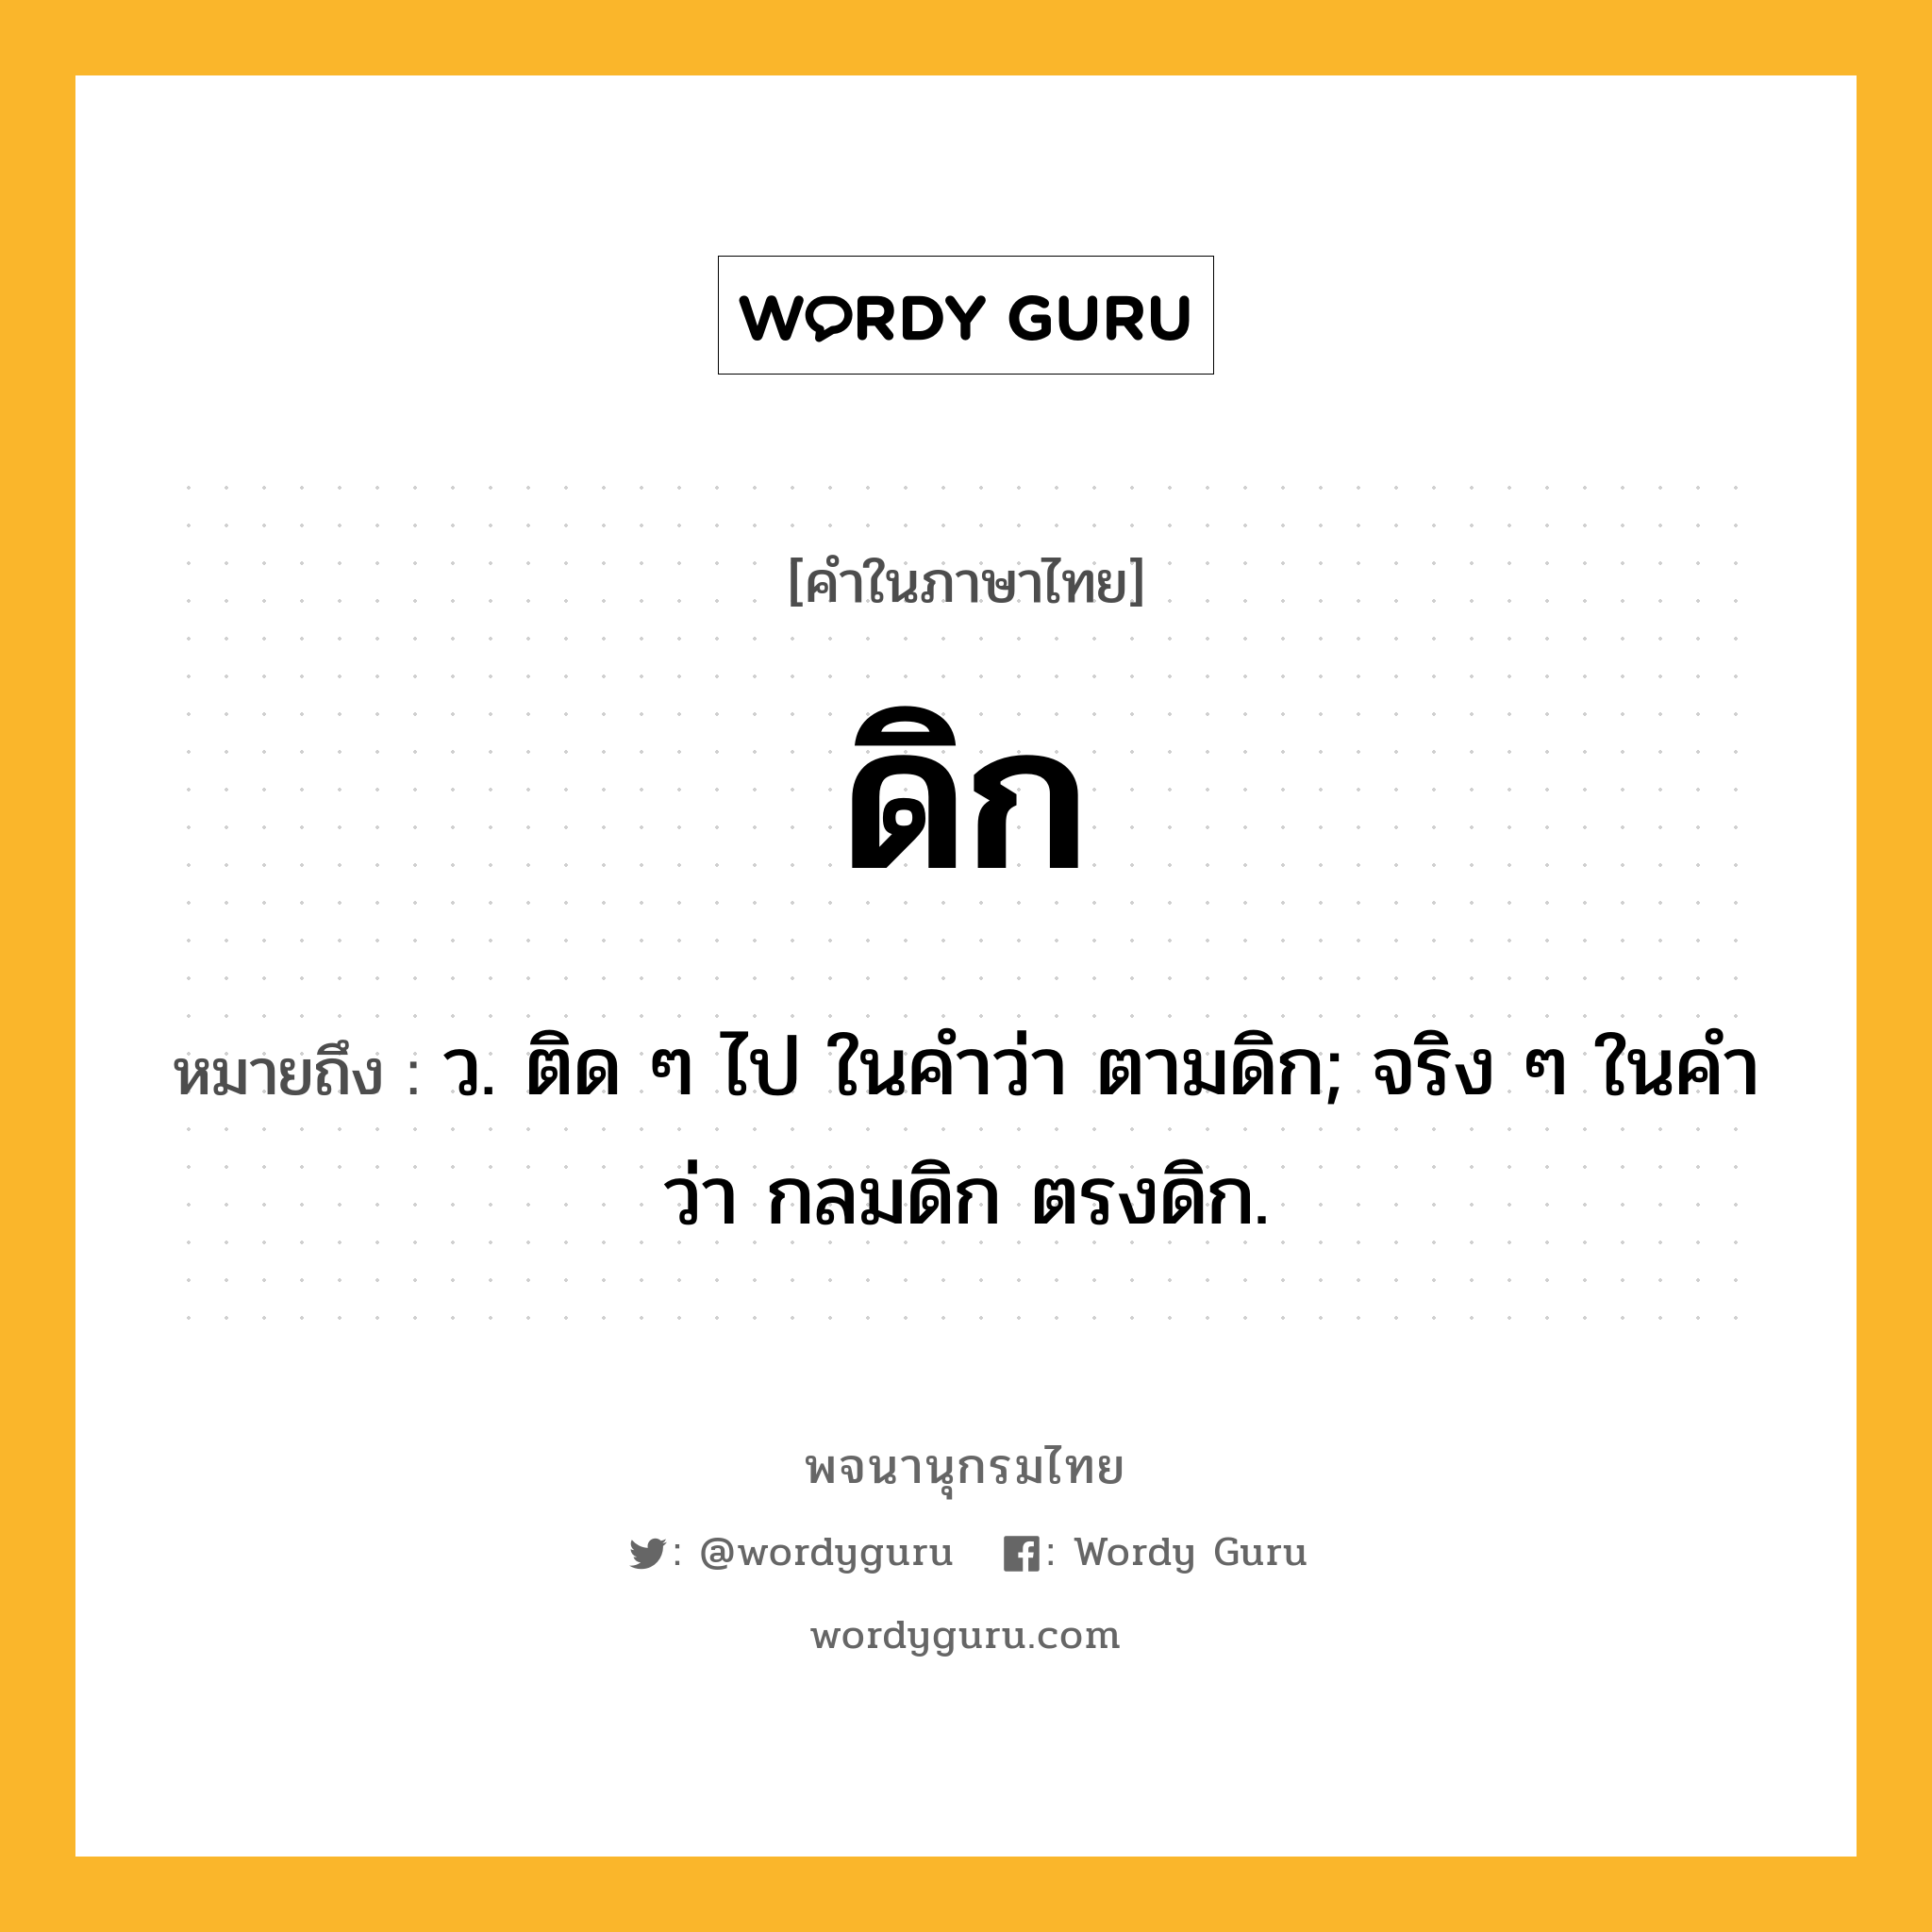 ดิก หมายถึงอะไร?, คำในภาษาไทย ดิก หมายถึง ว. ติด ๆ ไป ในคําว่า ตามดิก; จริง ๆ ในคําว่า กลมดิก ตรงดิก.